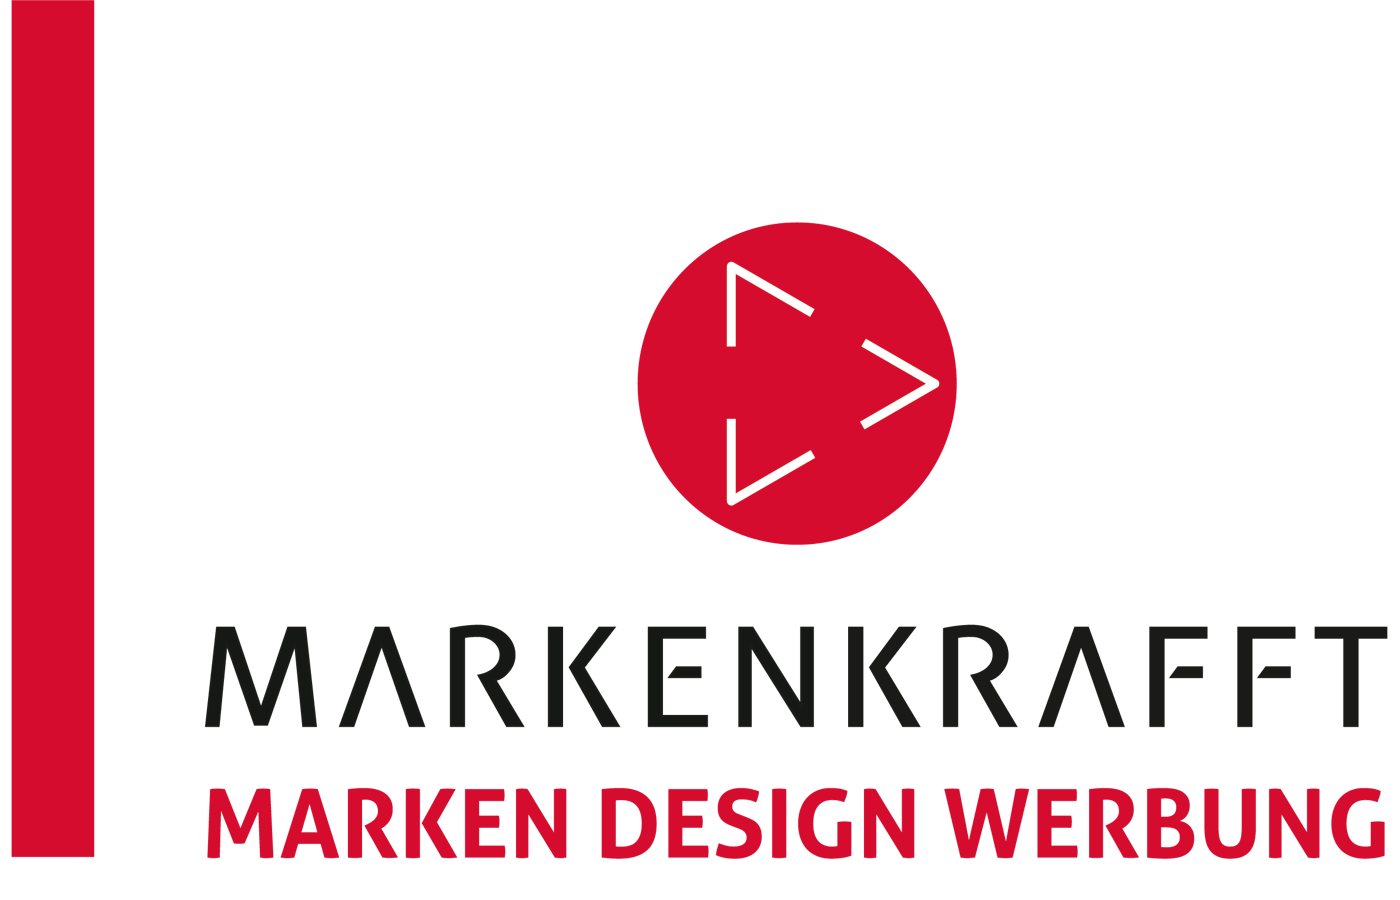 Markenkrafft Logo Header v2